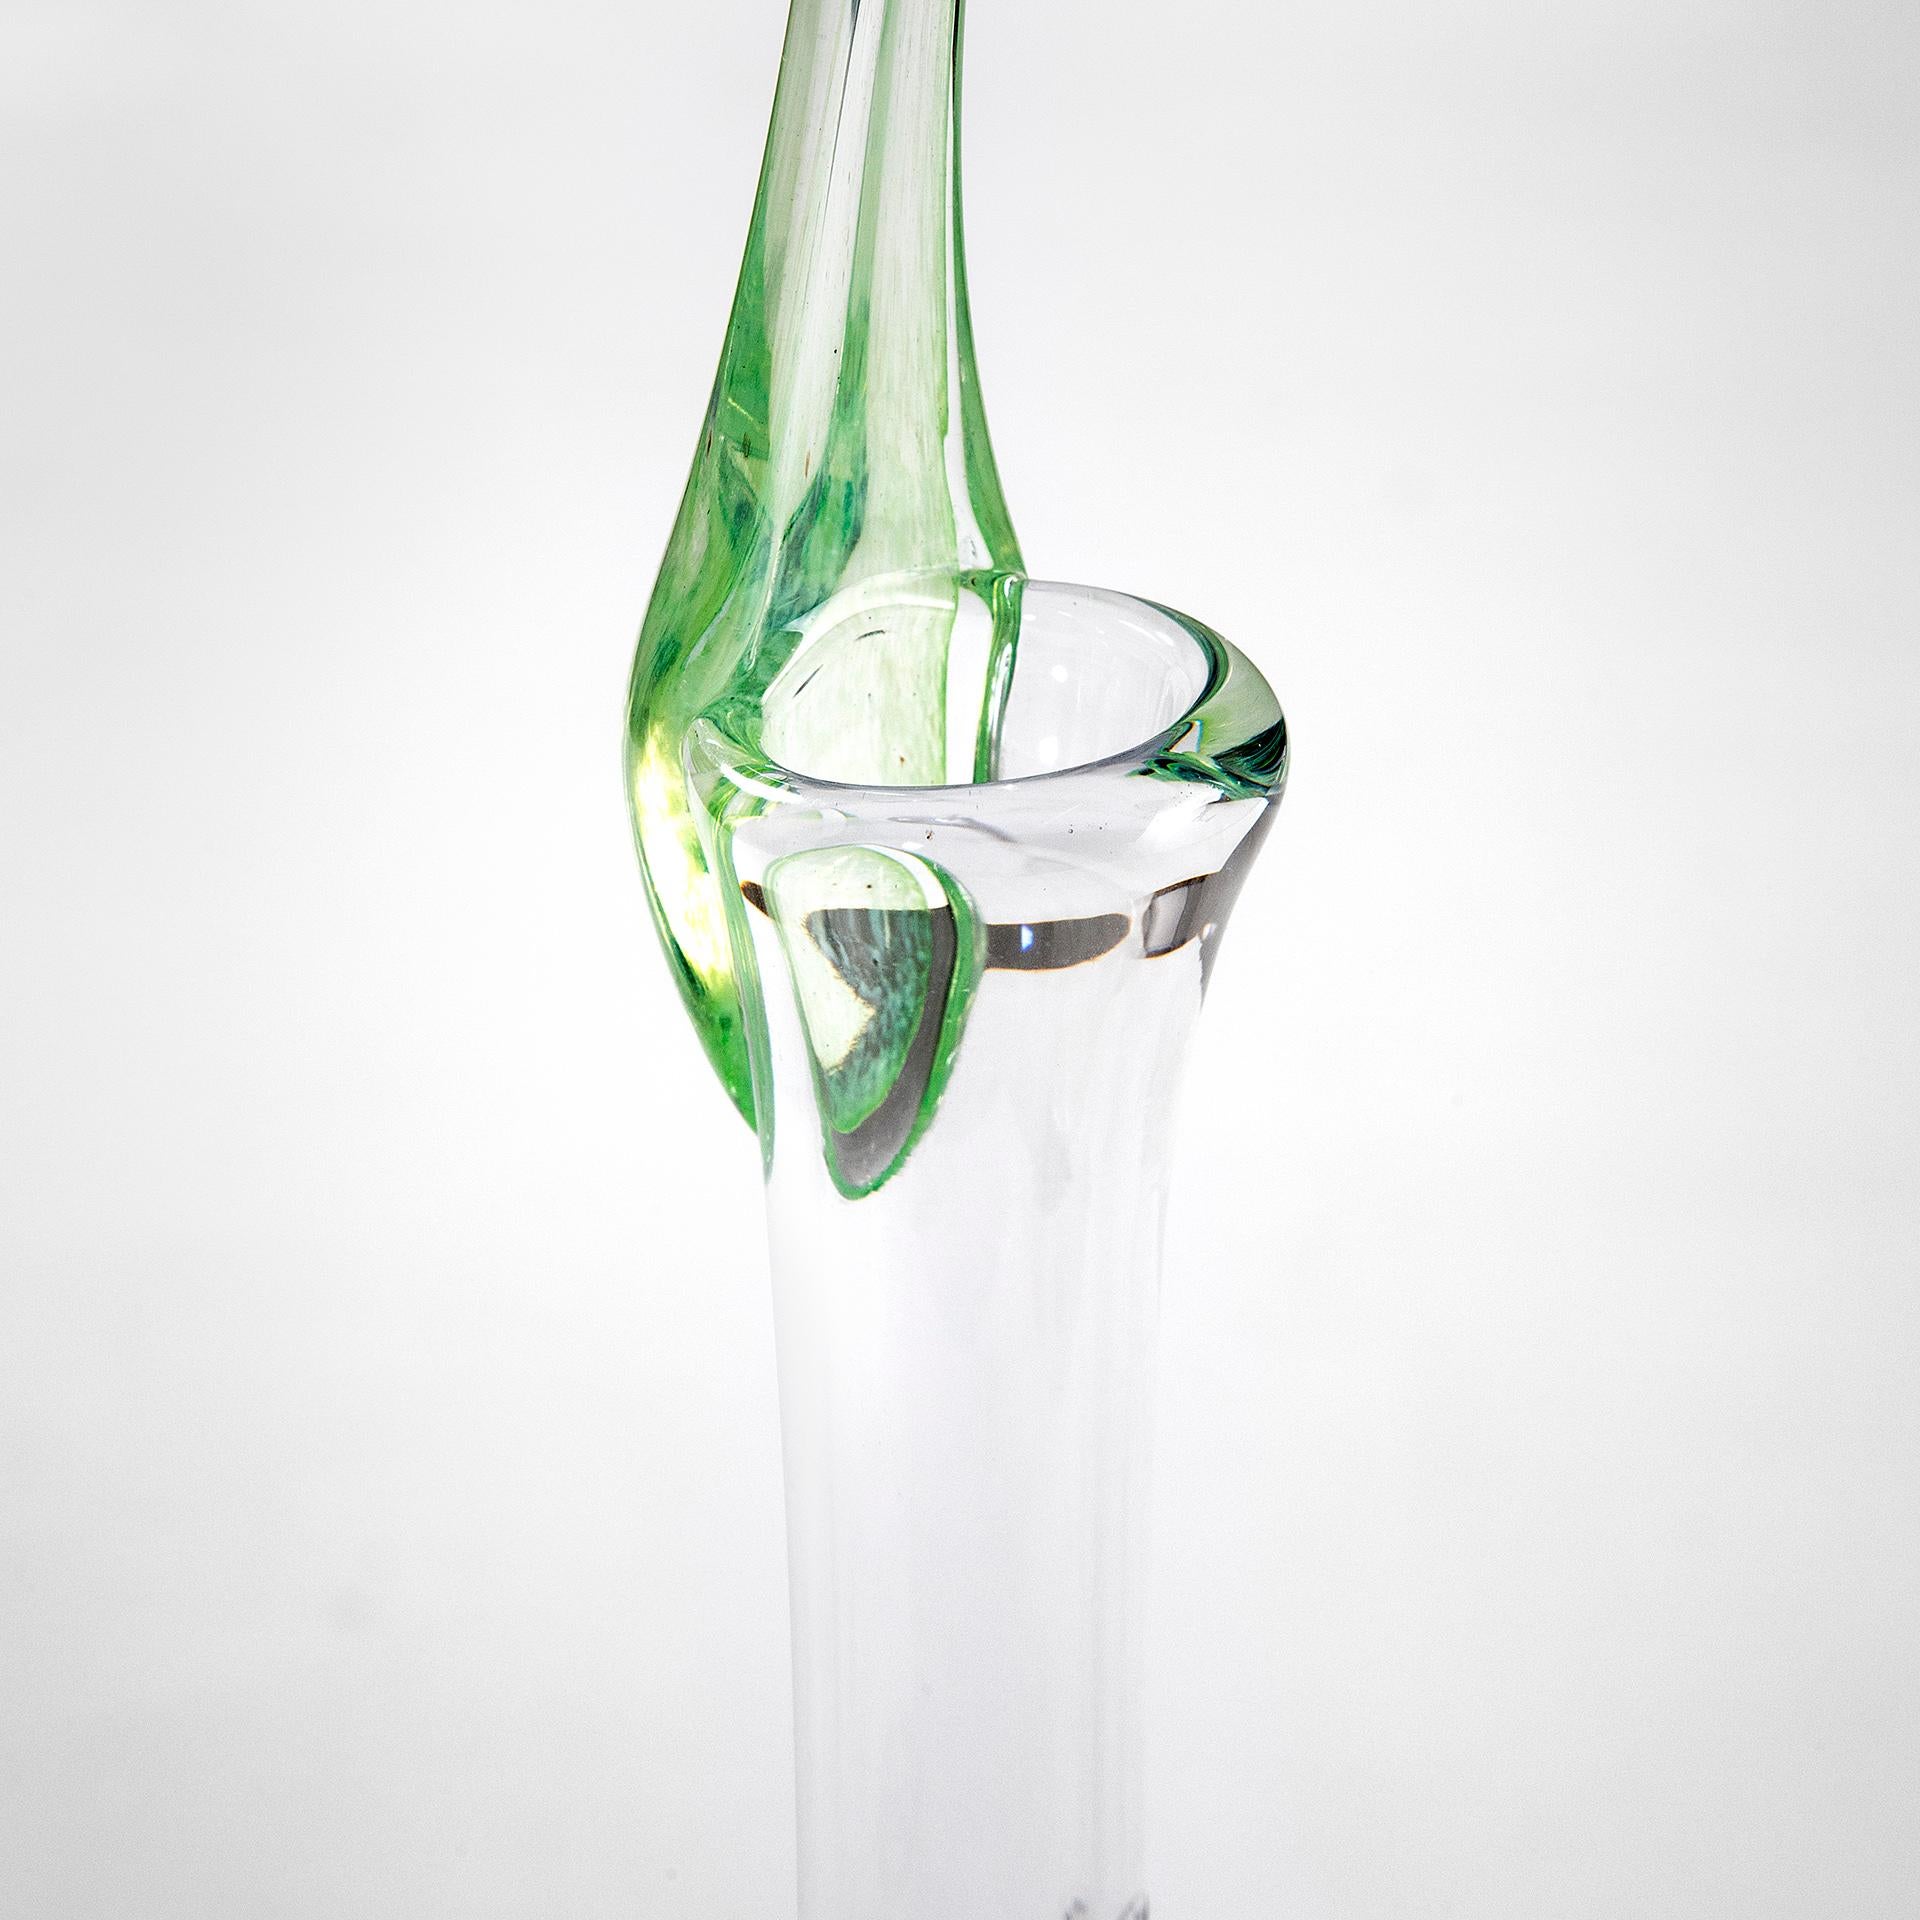 20th Century Shiro Kuramata Vase Mod. Ikebana - Big in Glass by '80s For Sale 1